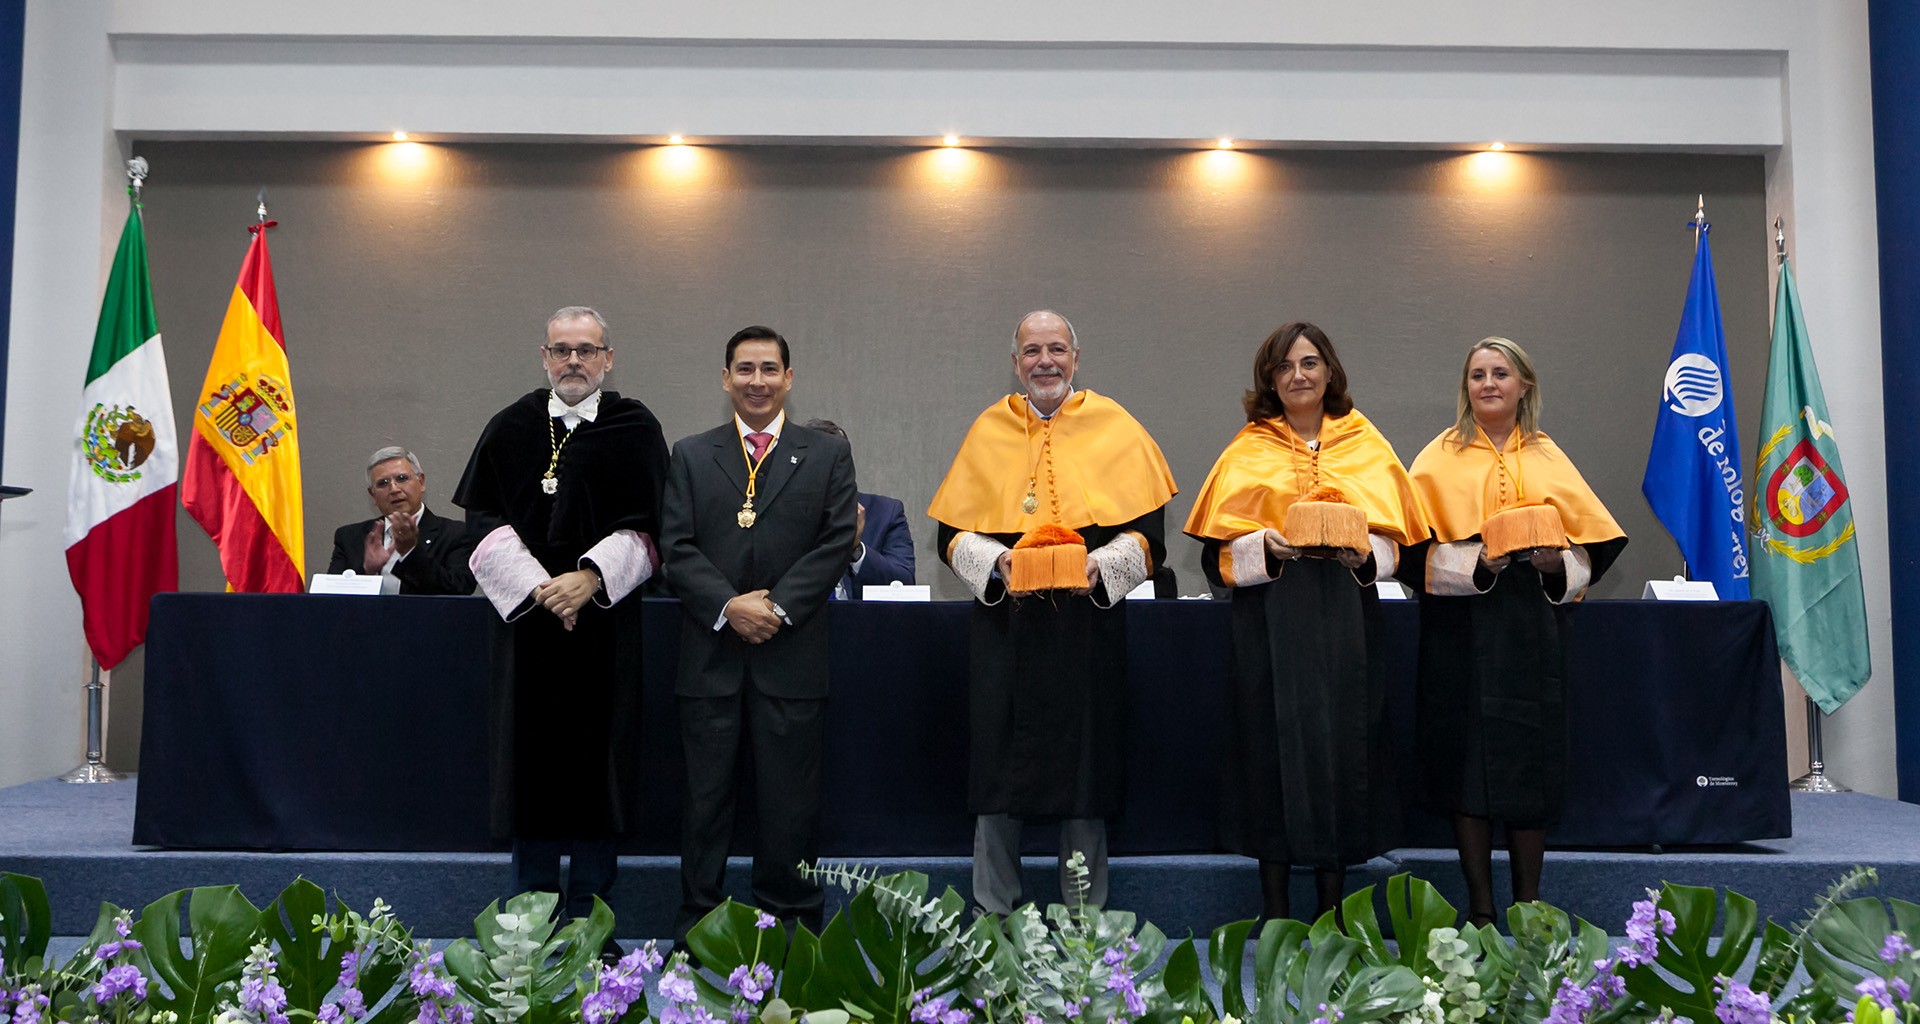 Se gradúan profesores del Tec de Monterrey de Doctorado por la Universidad de Cantabria